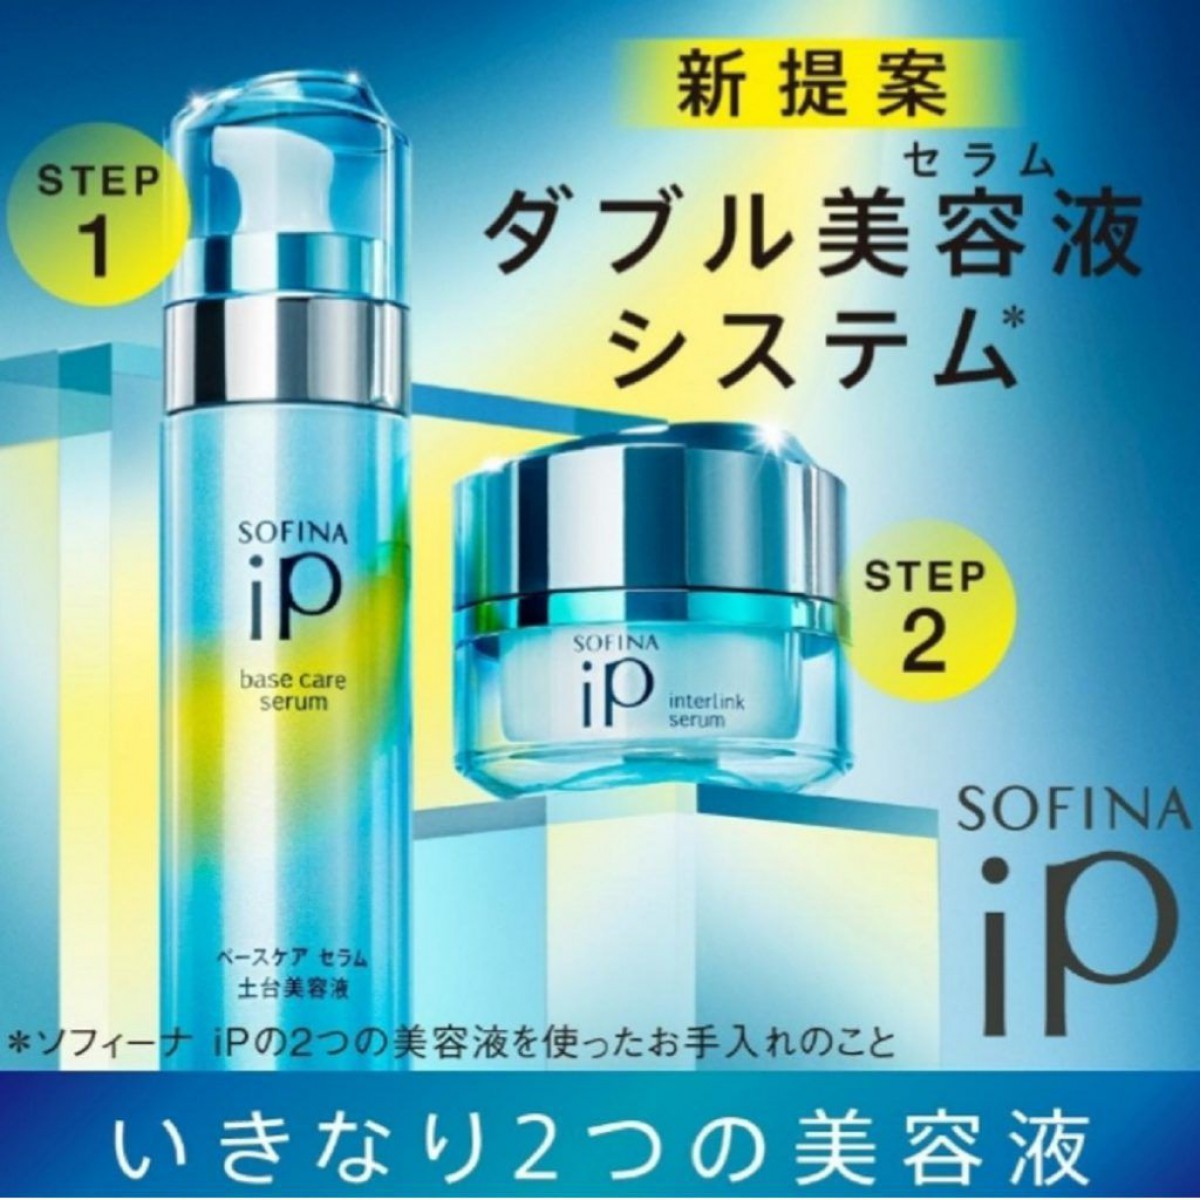 11/9 SOFINA iPは次のステージへ　ソフィーナが新しく生まれ変わります。ダブル美容液がお肌のお手入れを変える！！